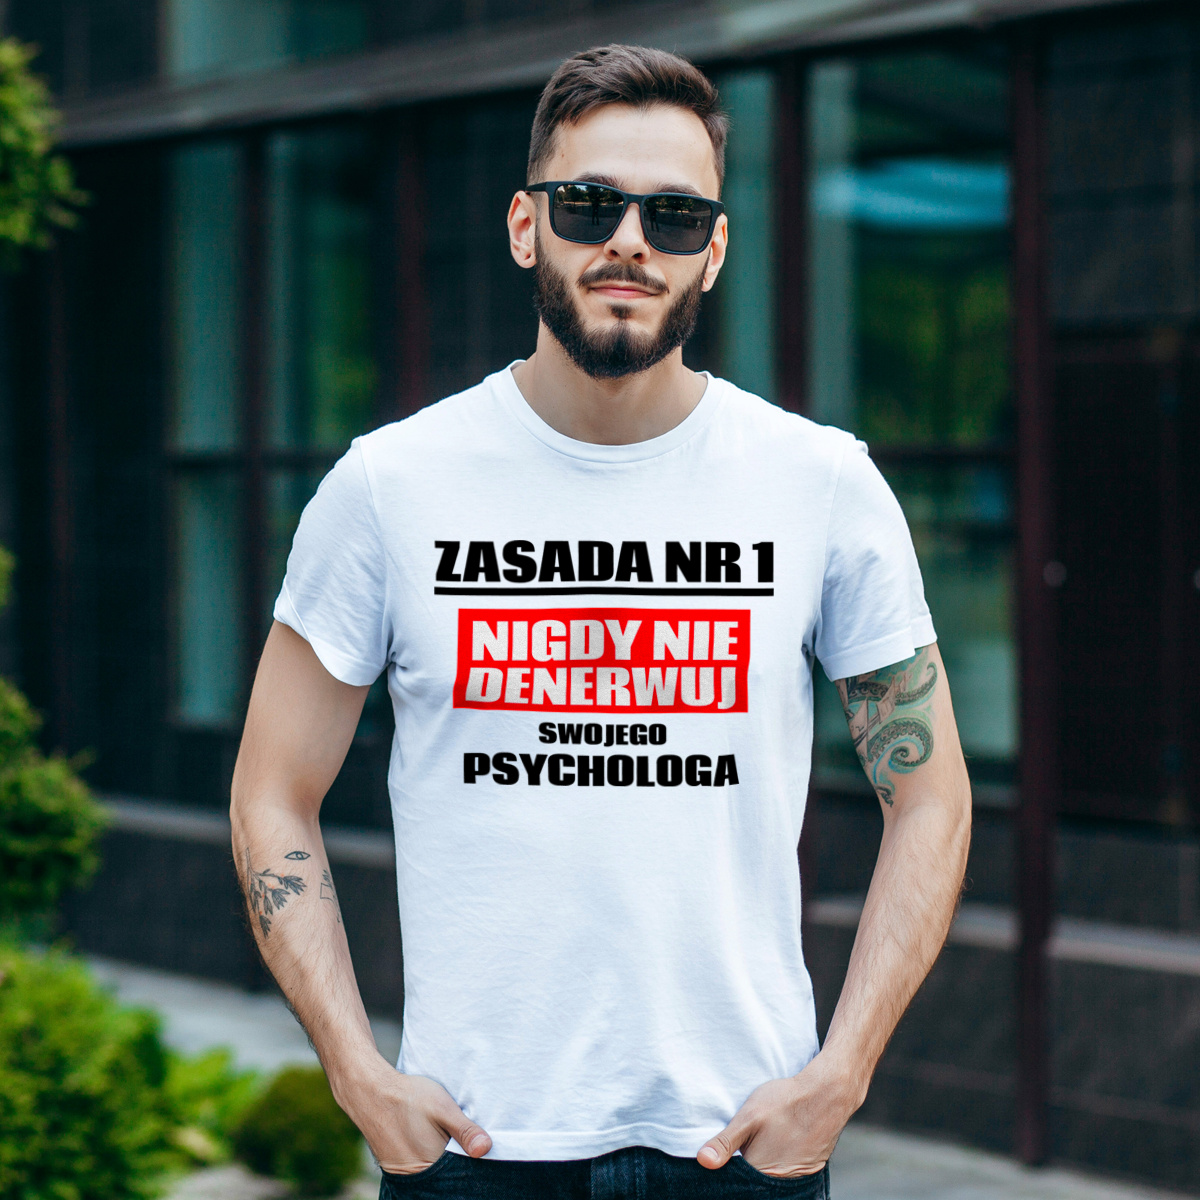 Zasada Nr 1 - Nigdy Nie Denerwuj Swojego Psychologa - Męska Koszulka Biała